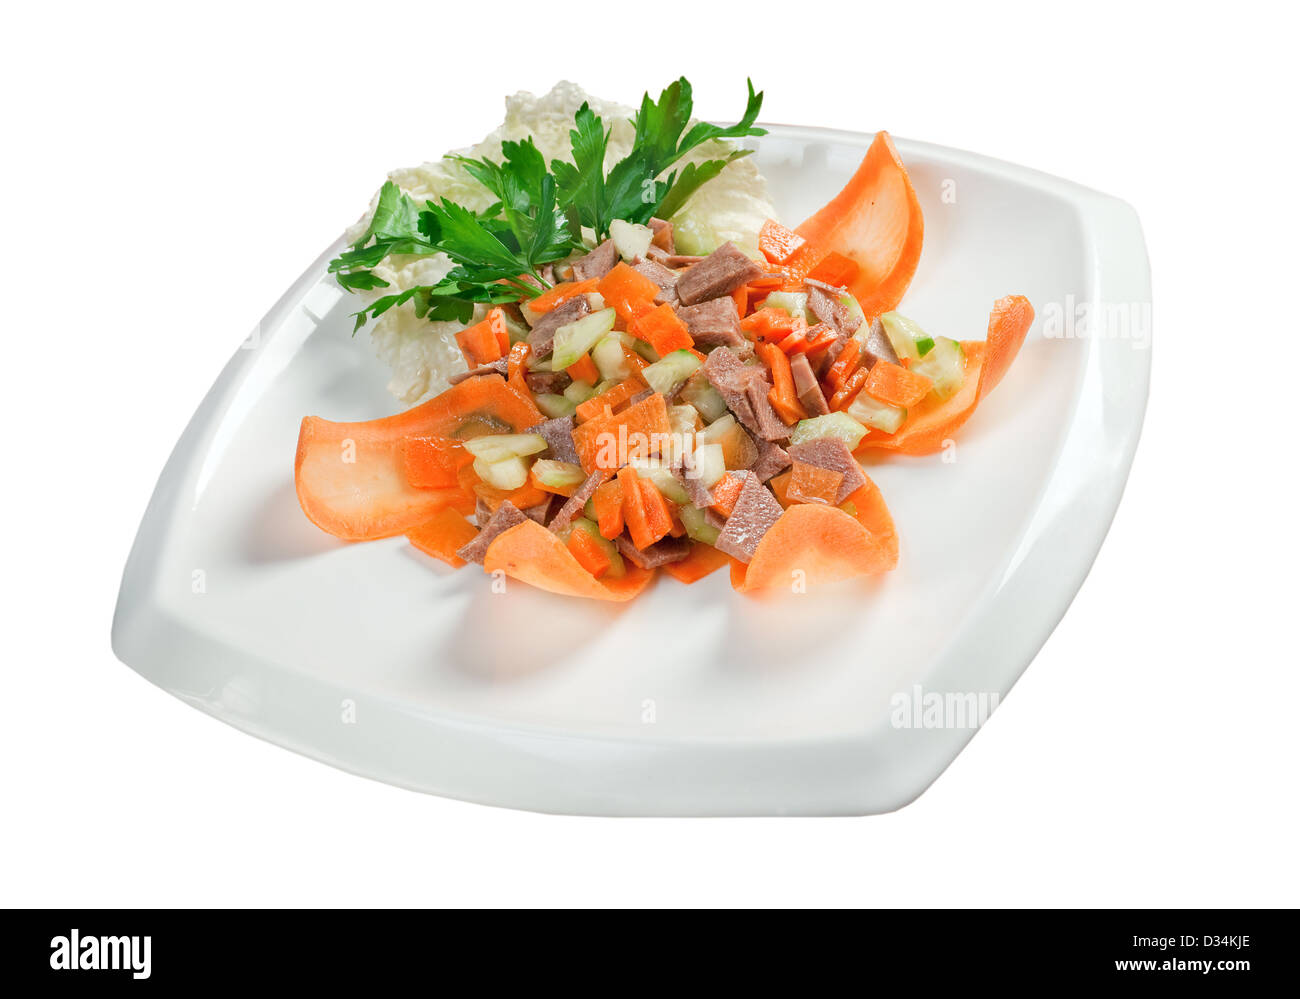 .La cuisine italienne salade saine de la langue de boeuf Banque D'Images